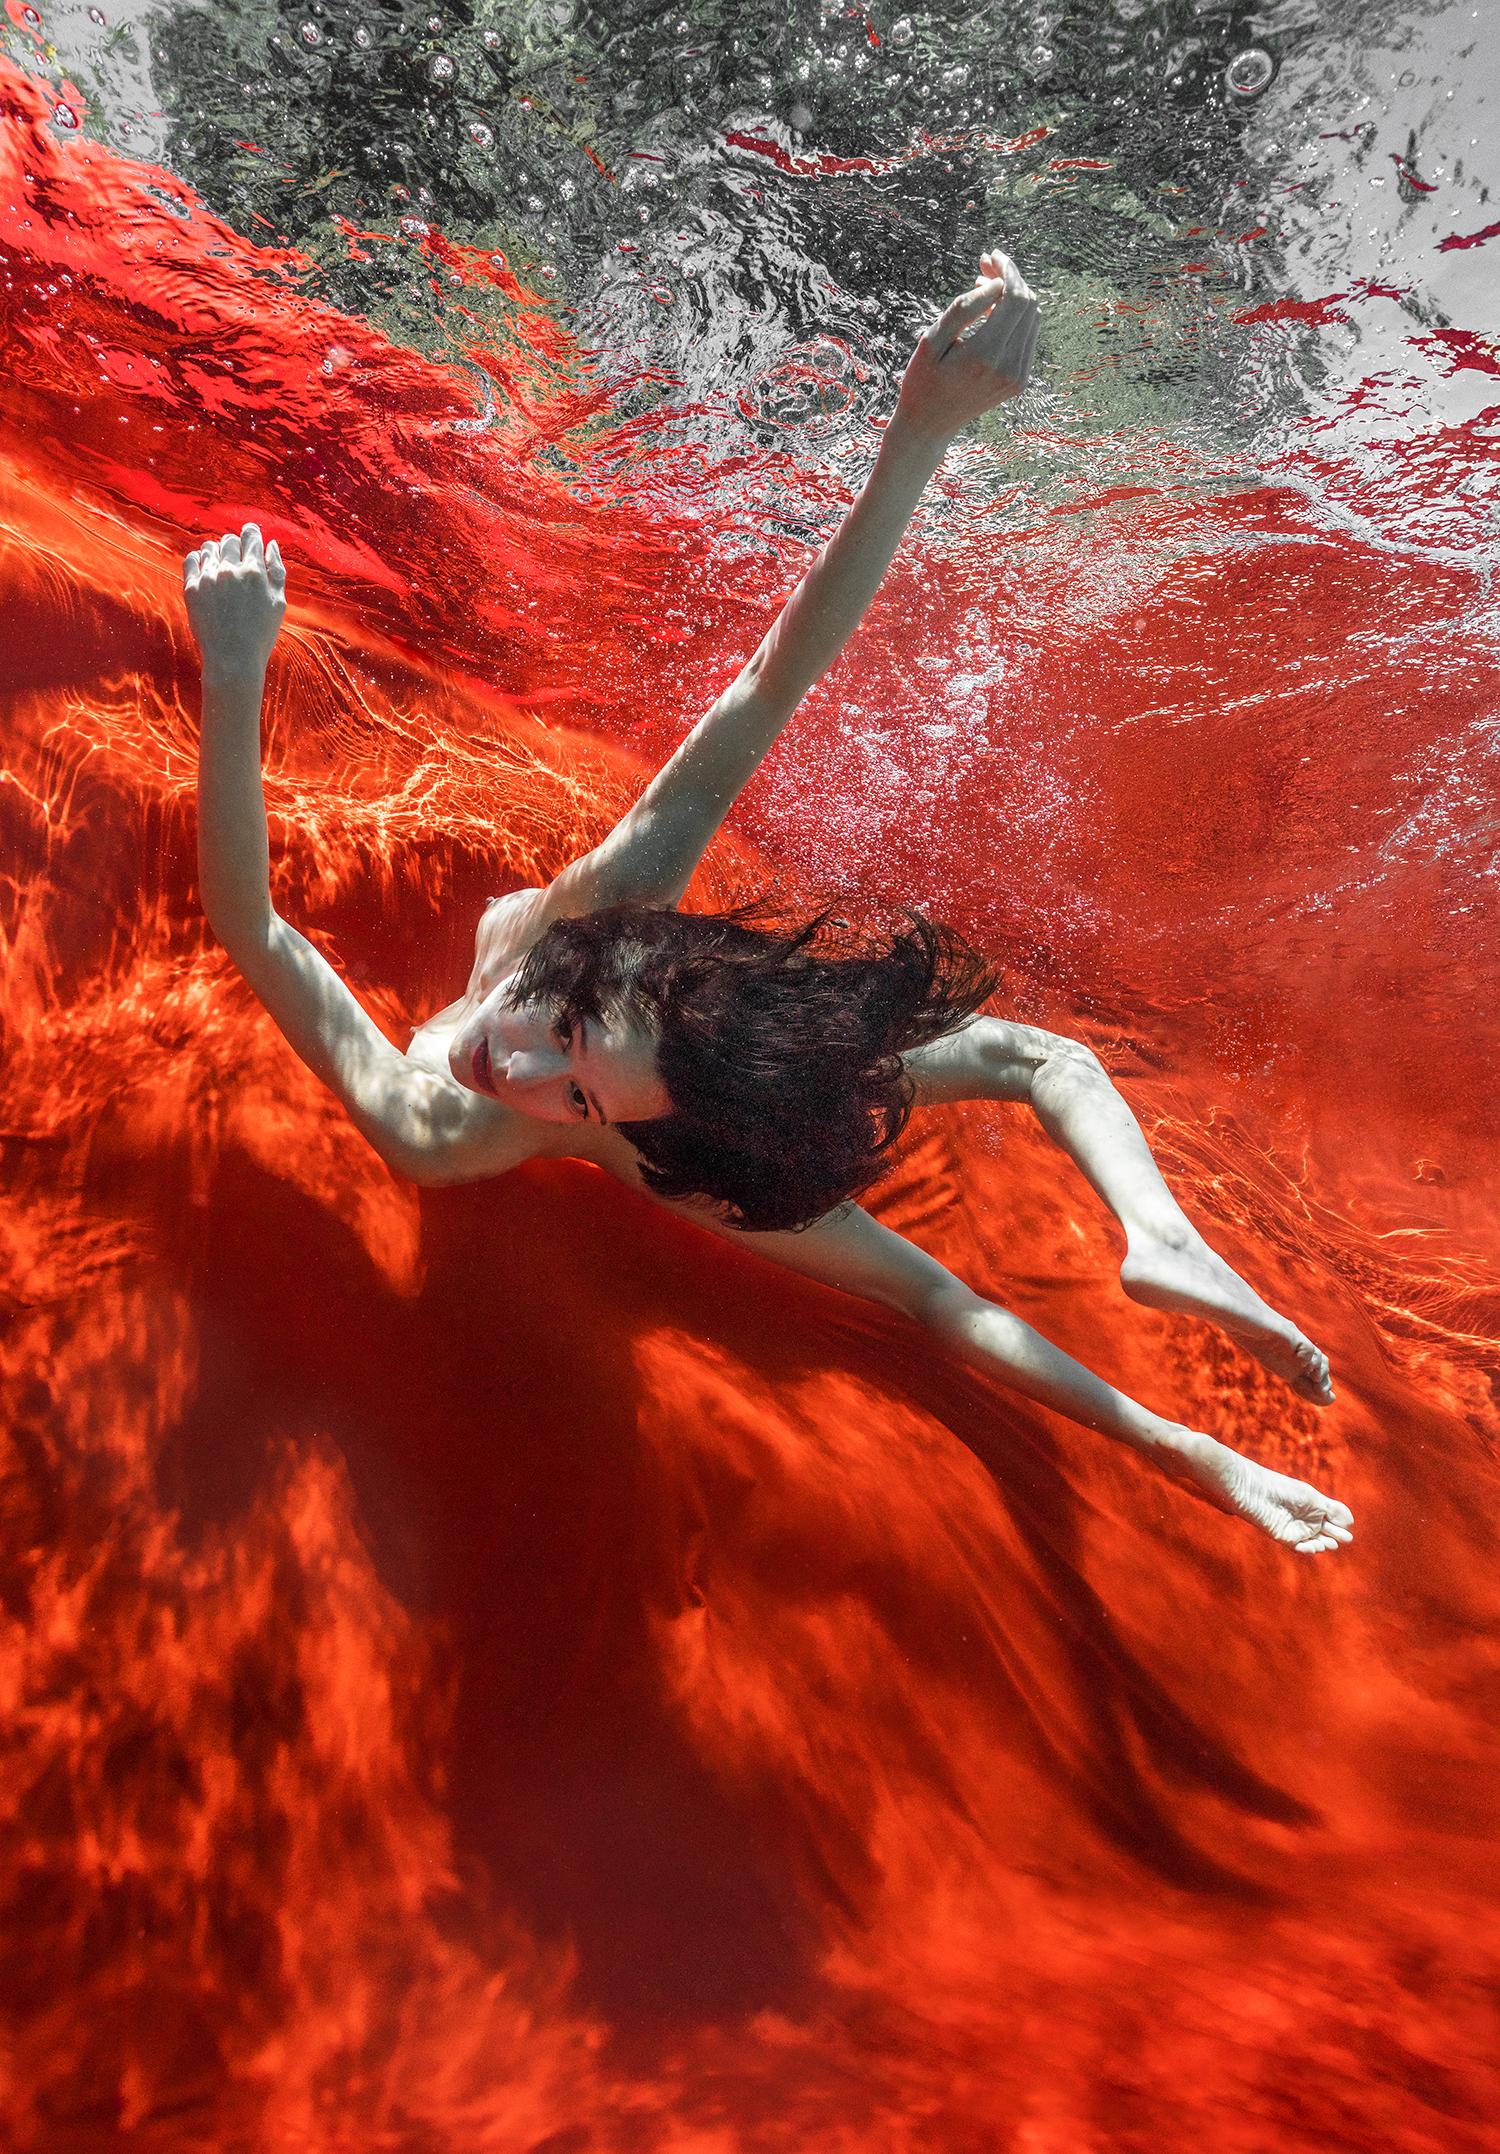 Wildes Blut  - Unterwasser-Nacktfotografie - Archivalischer Pigmentdruck 24x18"